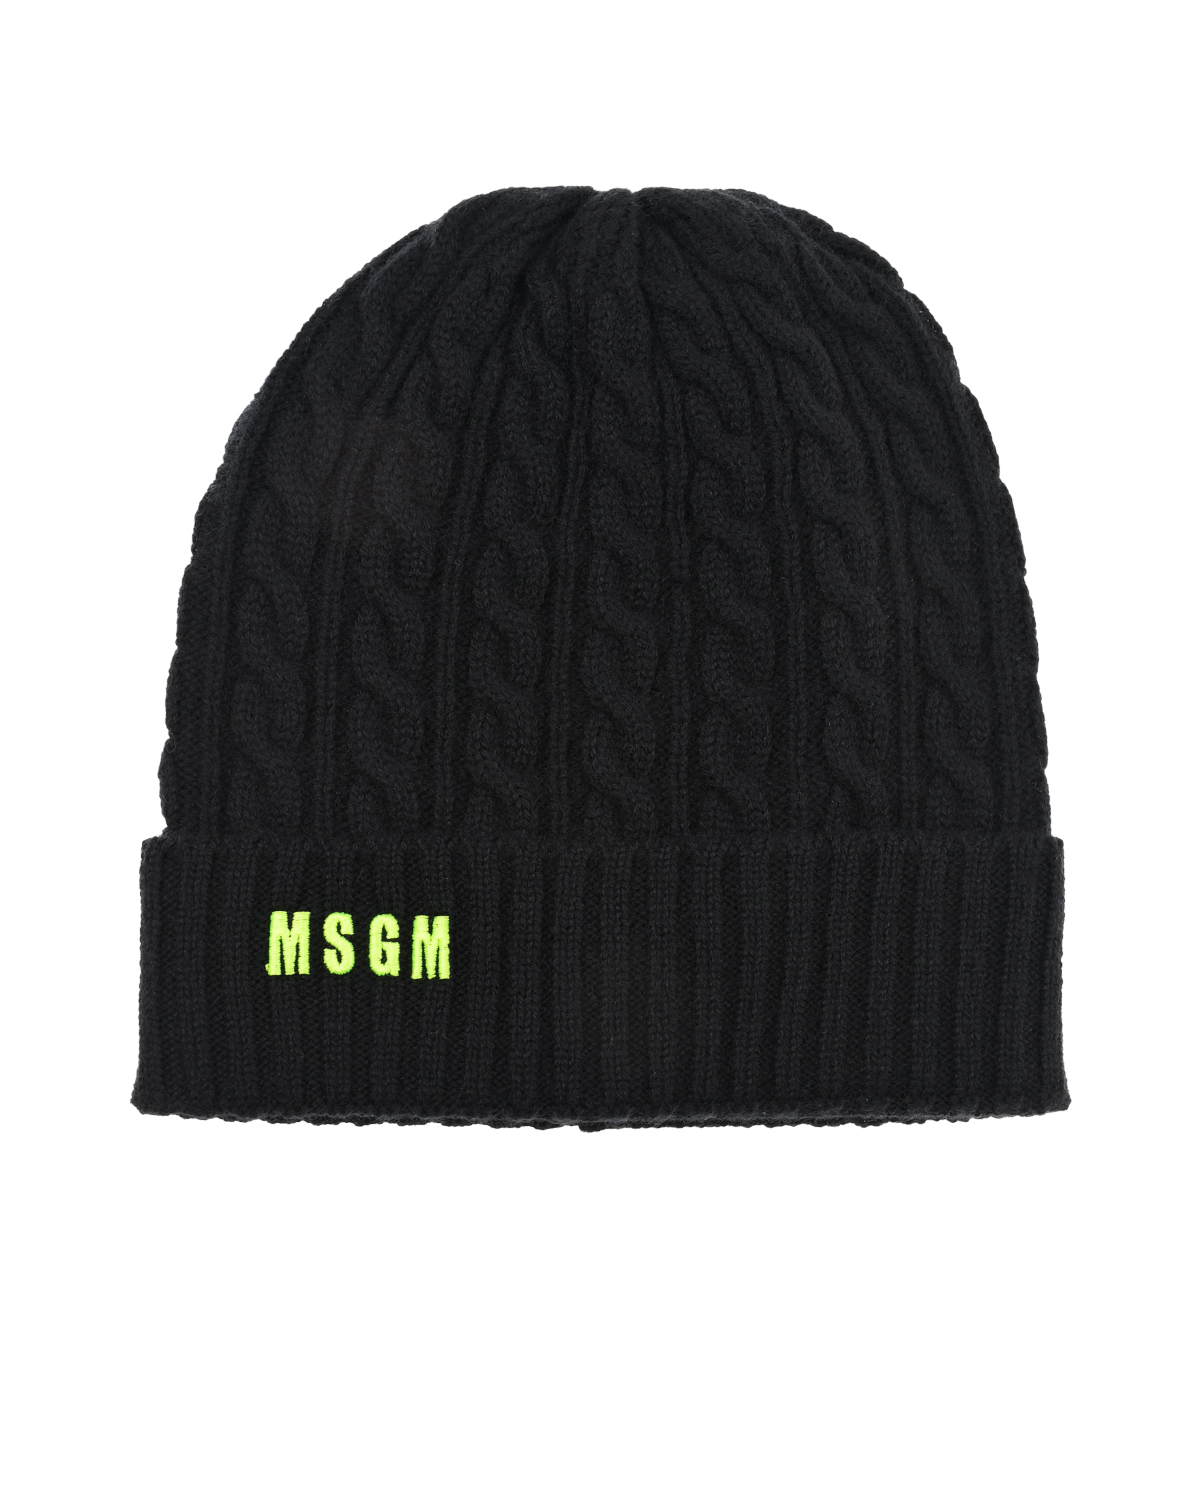 Черная шапка из шерсти и кашемира MSGM, размер unica, цвет черный